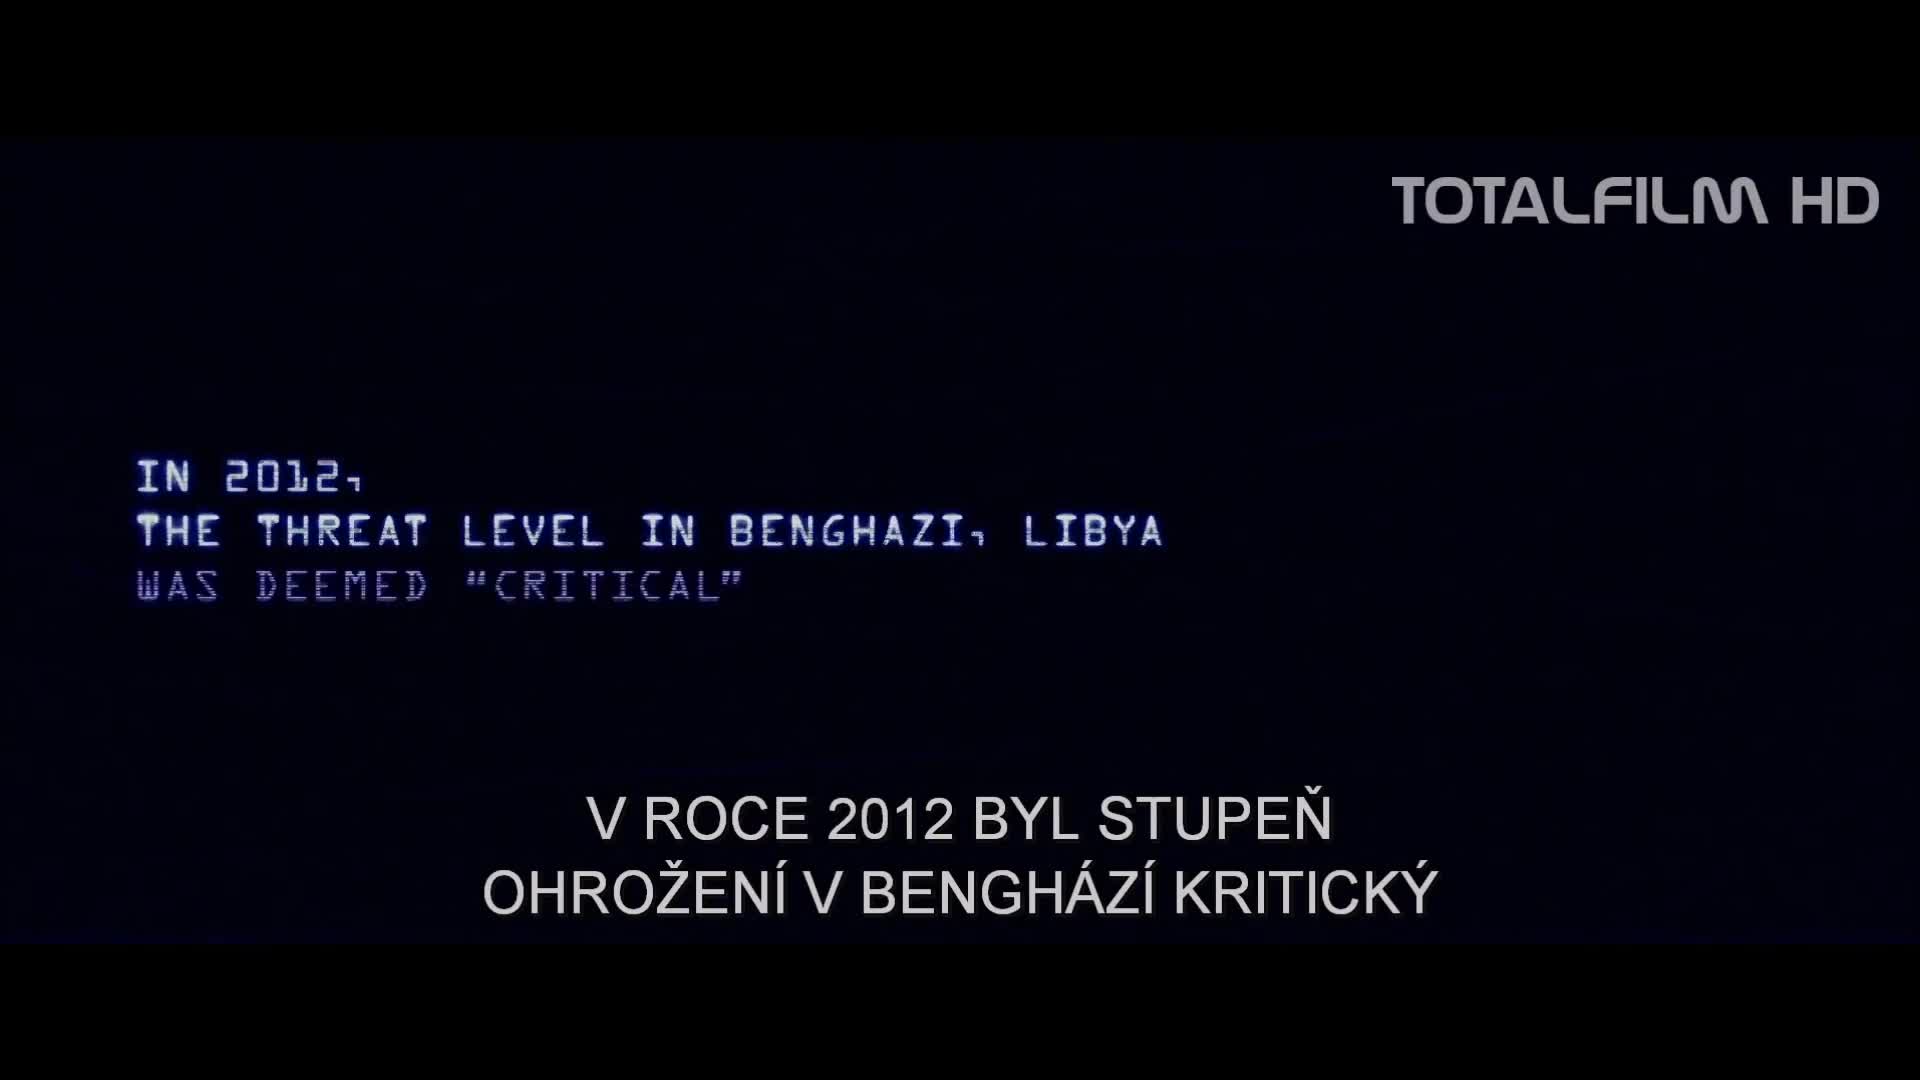 13 hodin: Tajní vojáci z Benghází (2015) CZ HD trailer